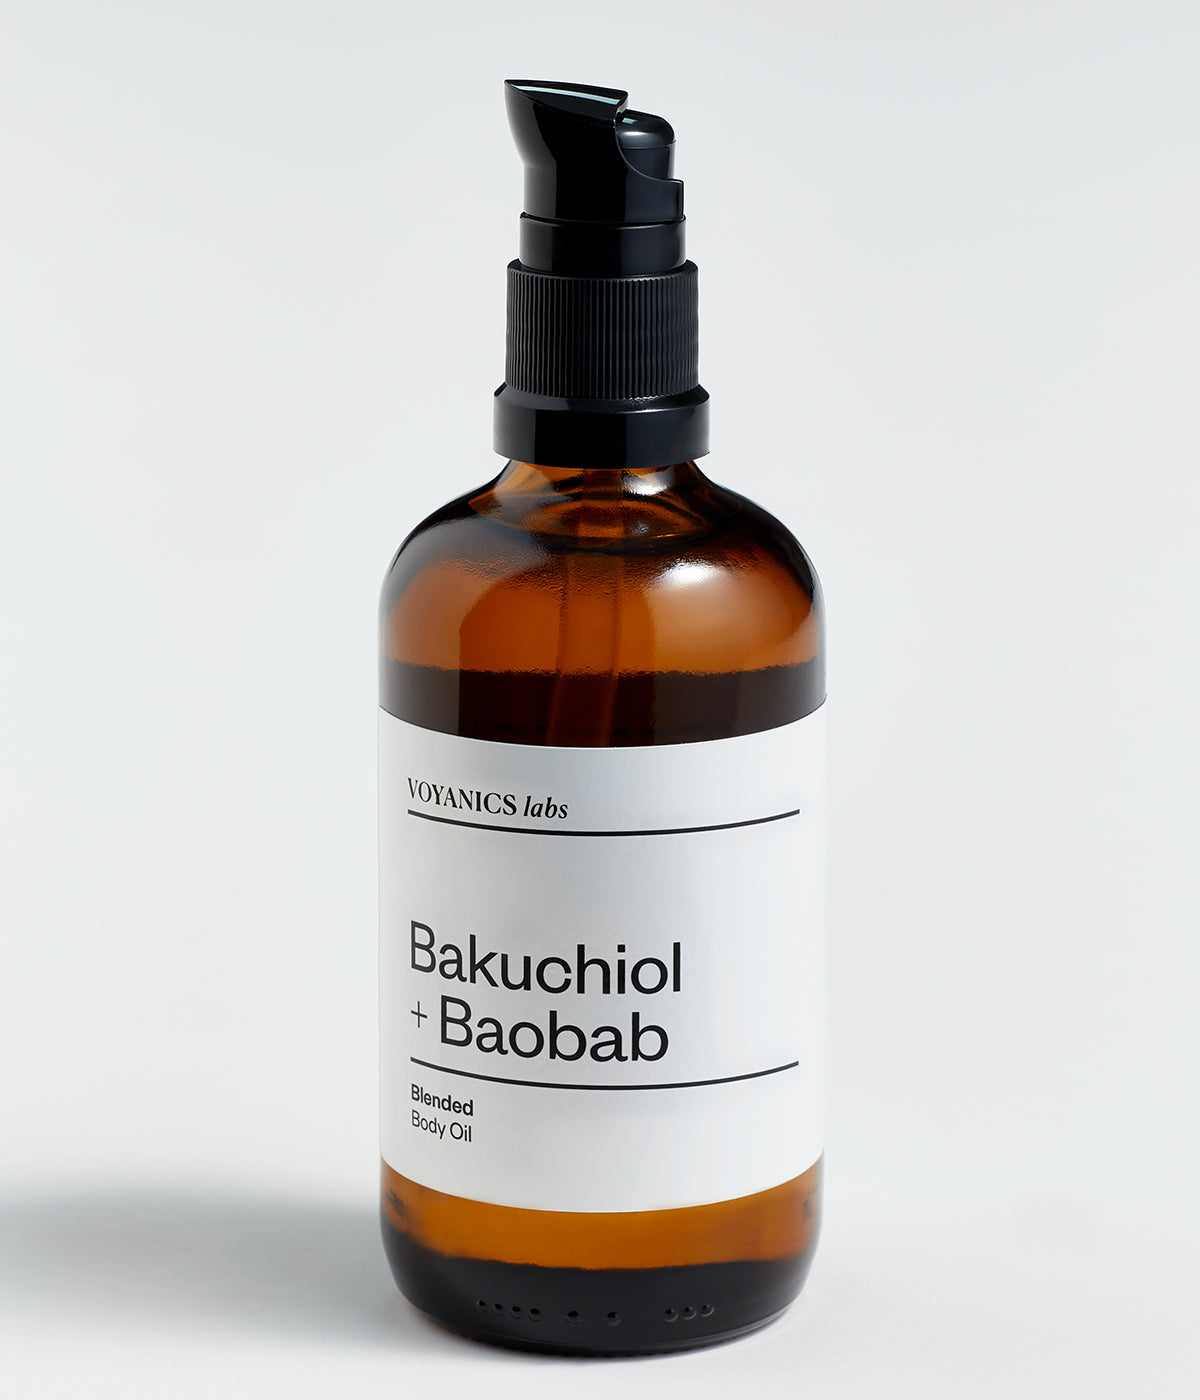 Bakuchiol + Baobab Body Oil